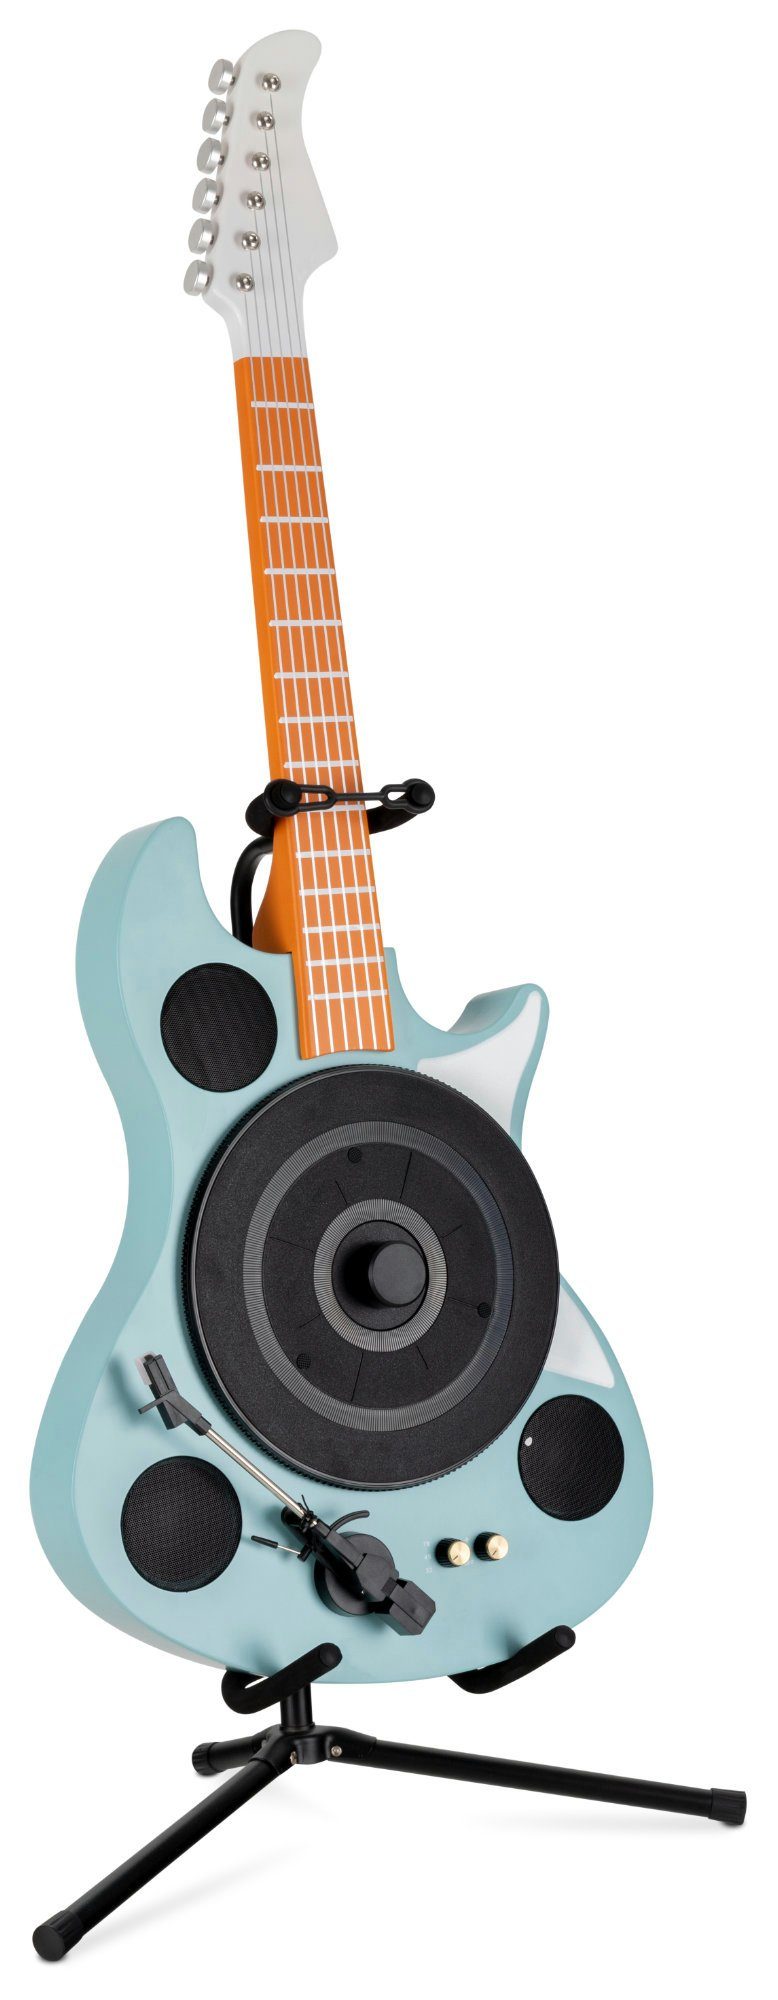 "Rory" E-Gitarrenfom 3 Schallplattenspieler Beatfoxx Plattenspieler GT-26 Ständer in mit Turntable (Riemenantrieb, Bluetooth, Geschwindigkeiten) Retro Vinyl inkl. Vertikal